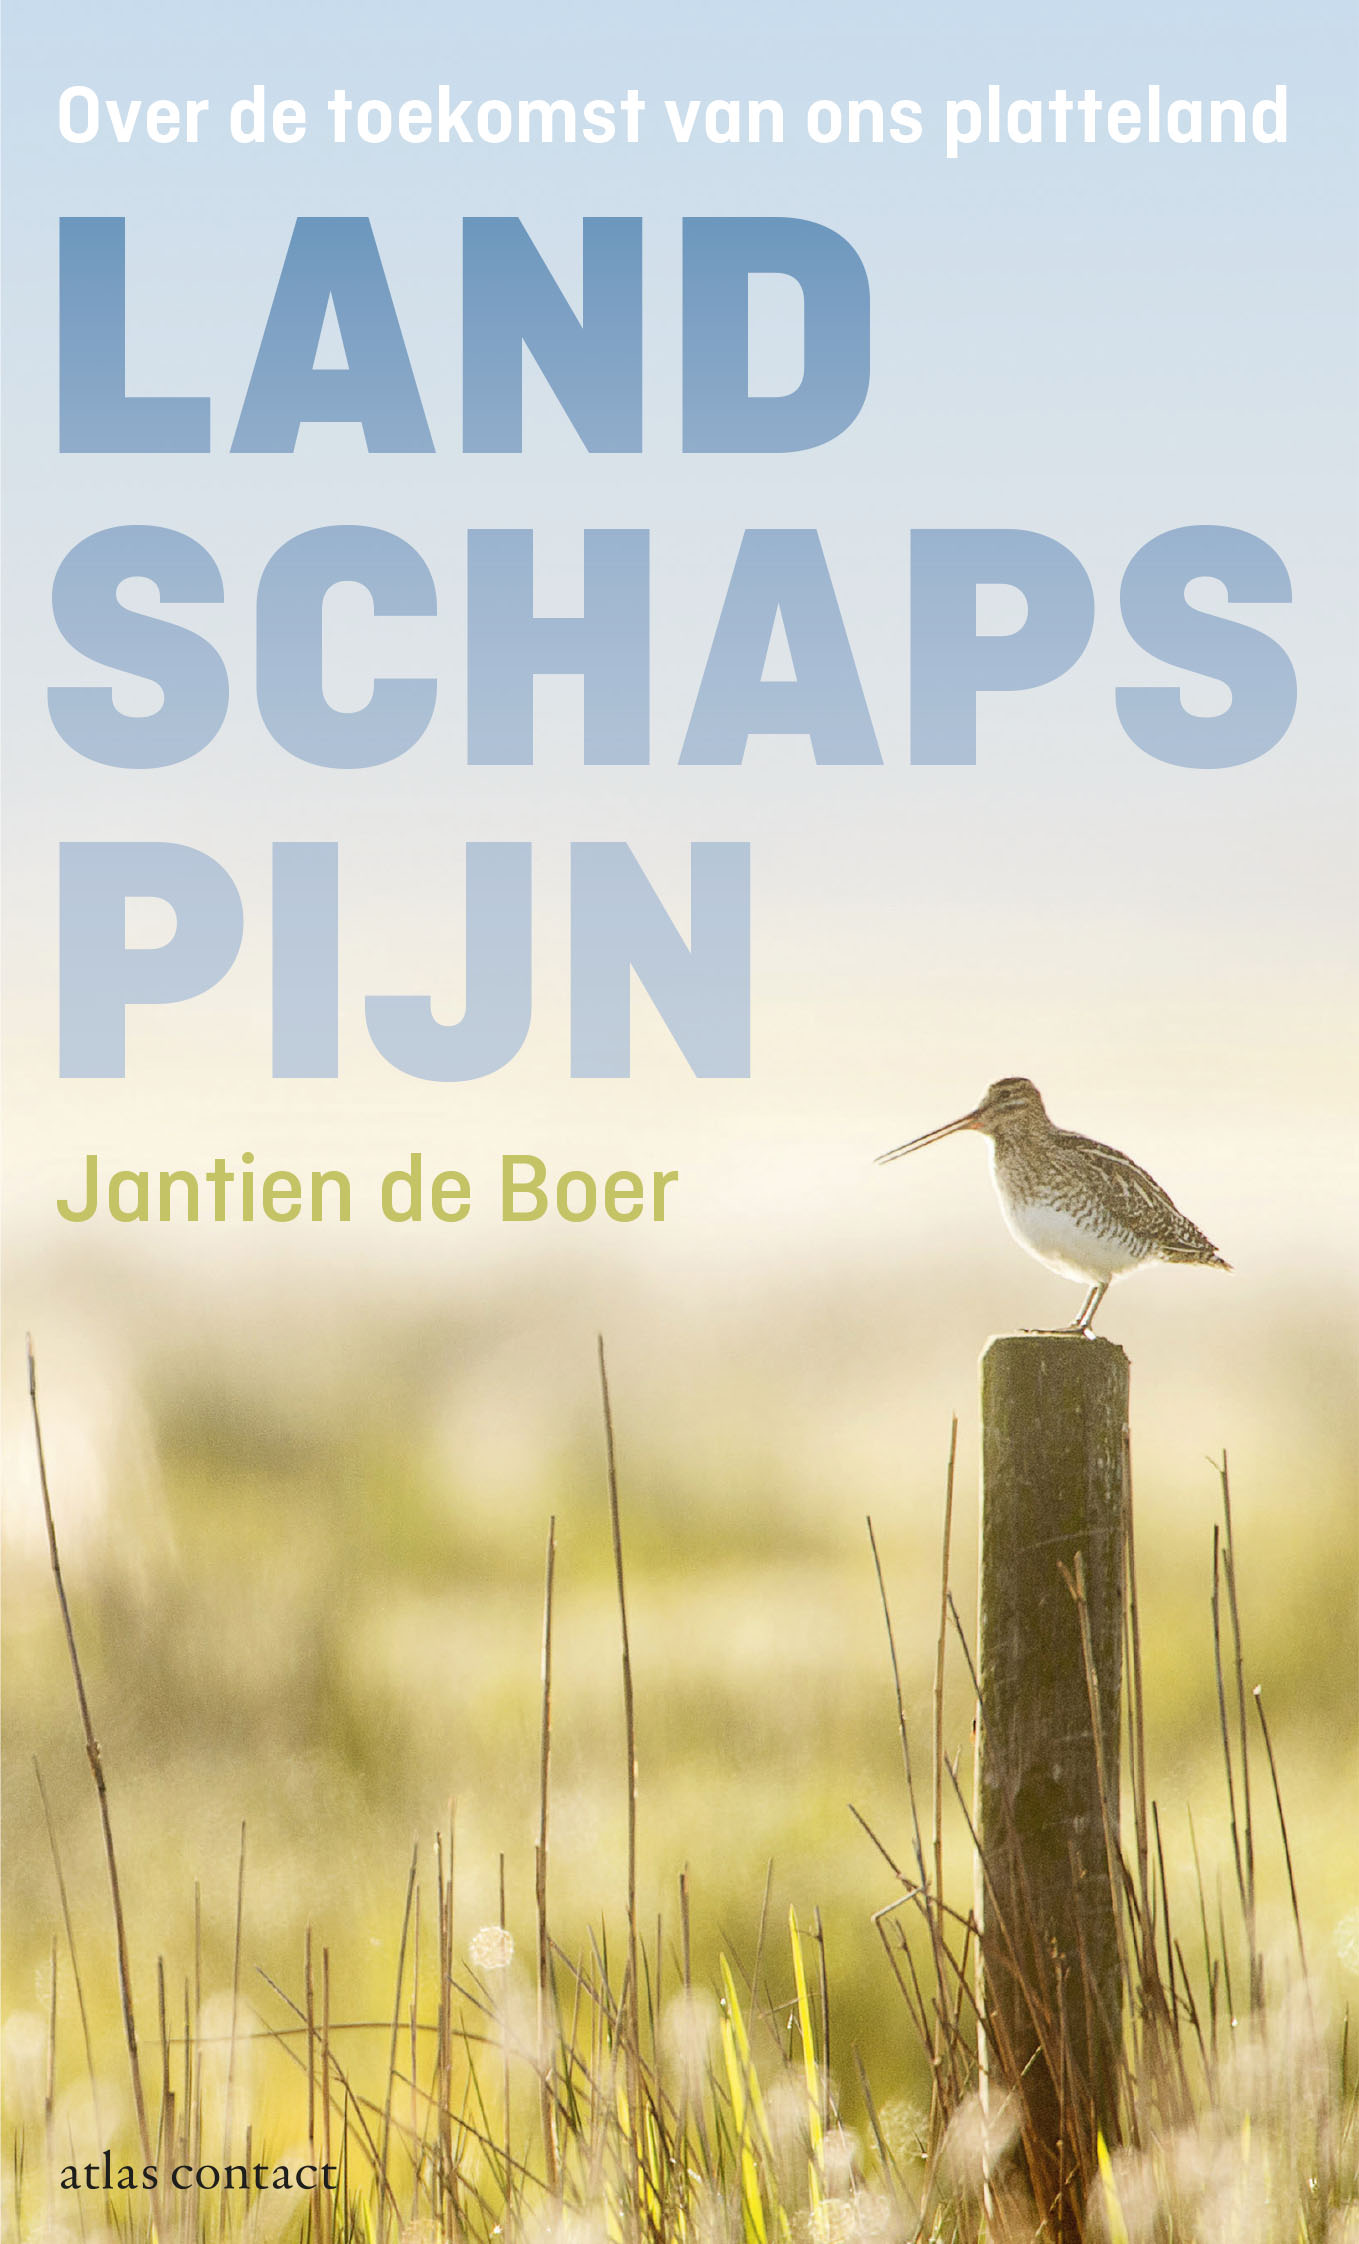 Landschapspijn | Jantien de Boer 9789045033907 Jantien de Boer Atlas-Contact   Natuurgidsen Nederland